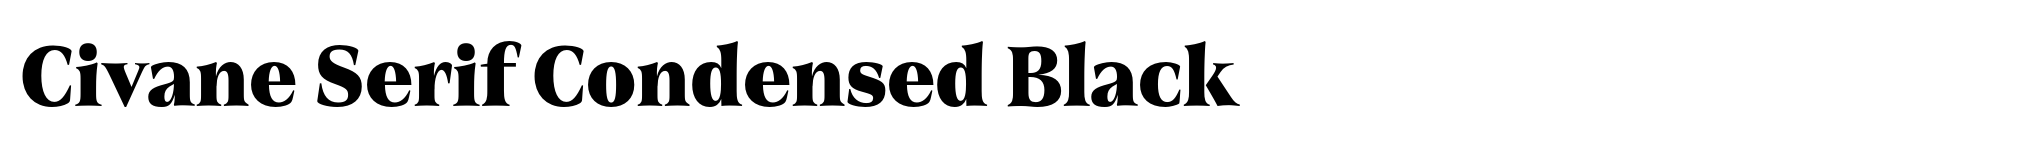 Civane Serif Condensed Black image